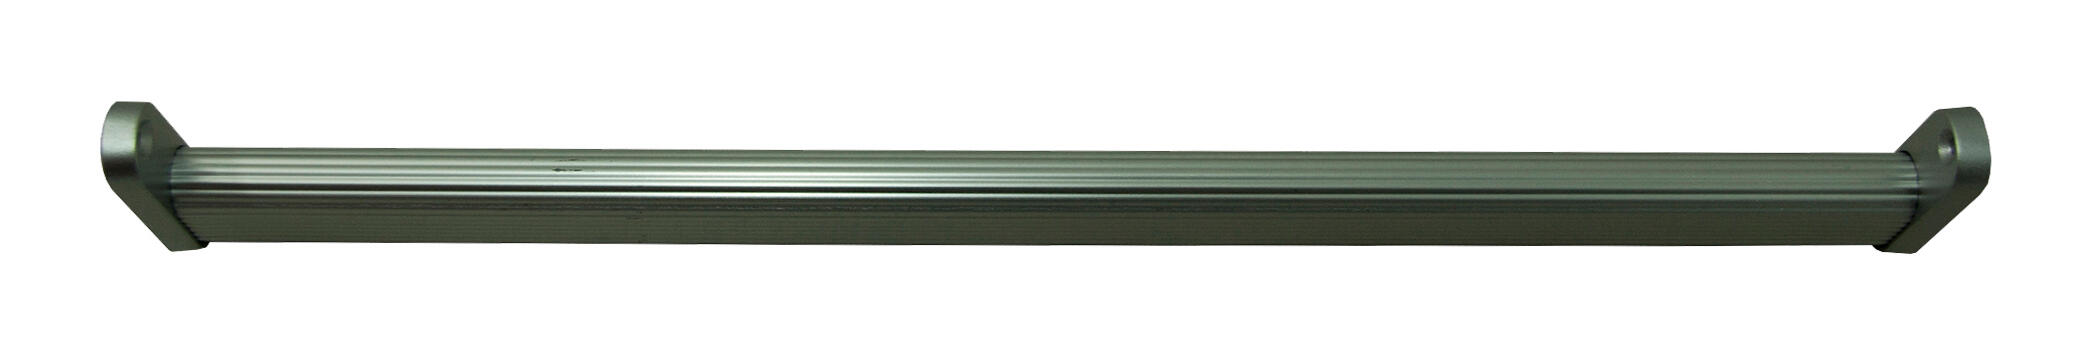 Kit barra de ropero y soportes no extensible para módulos de 60 cm